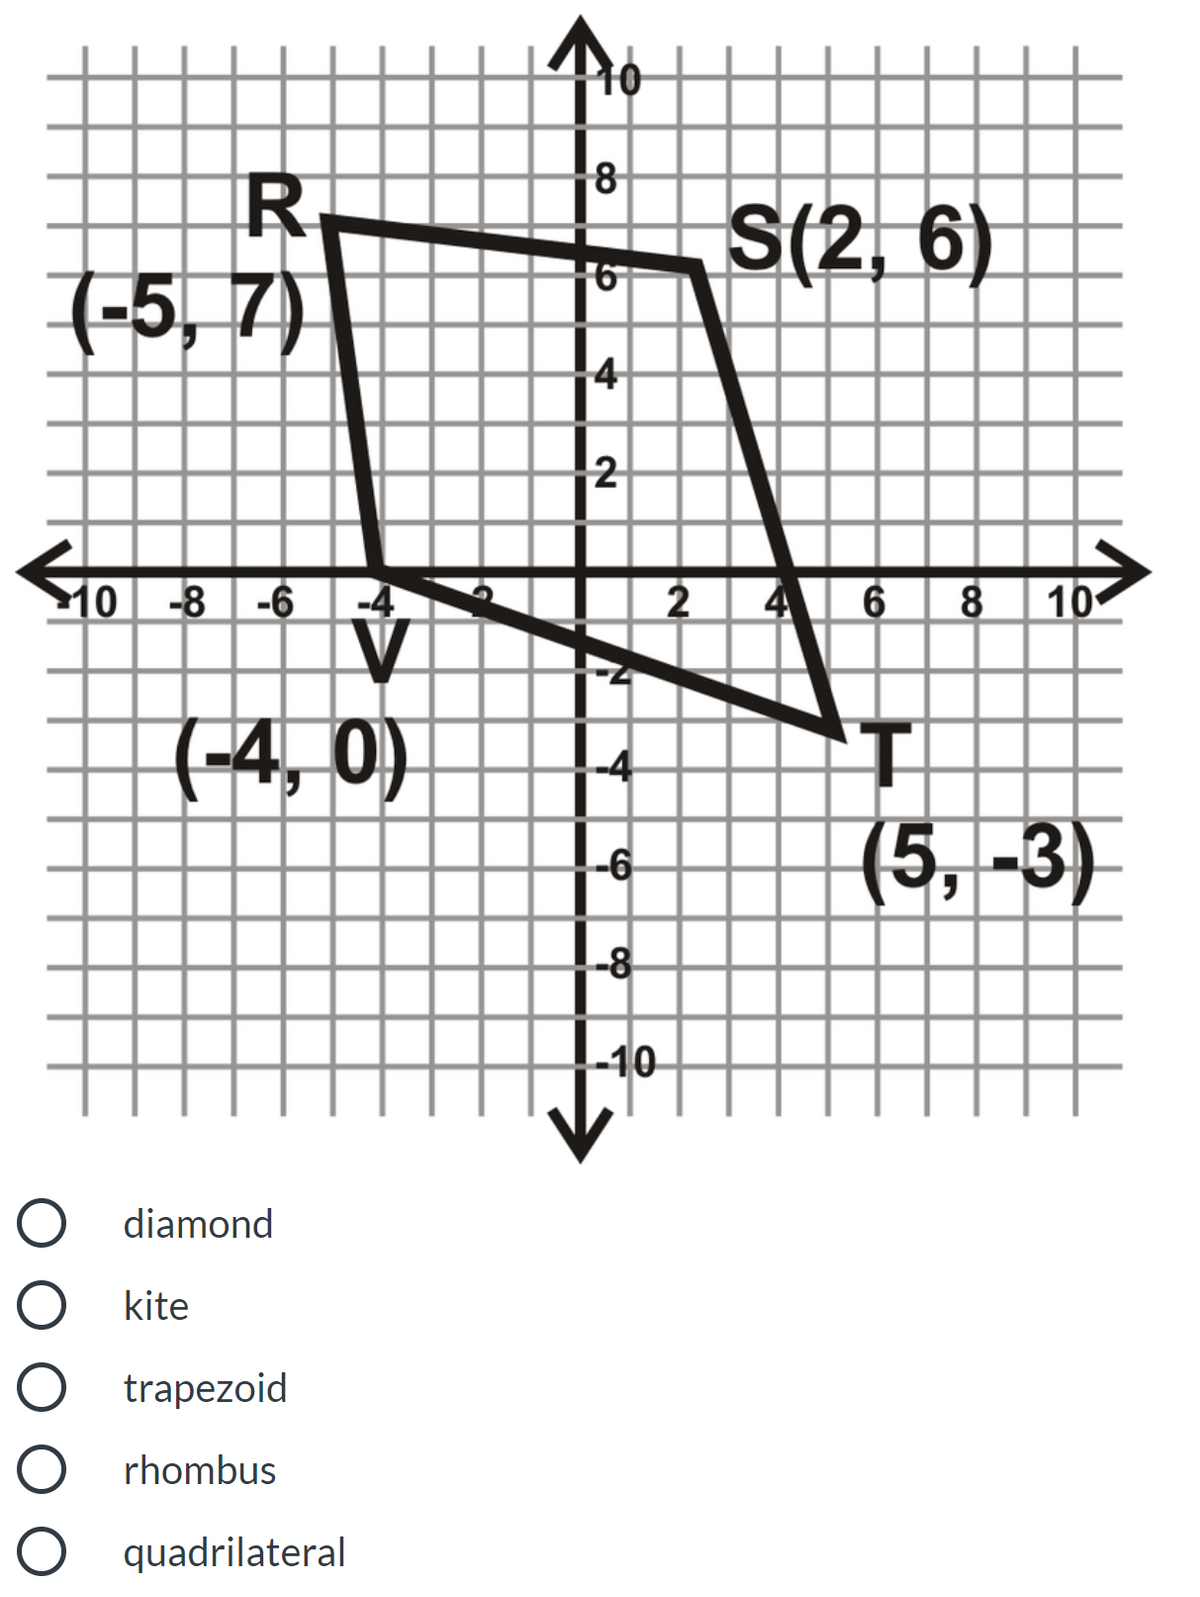 8
S(2, 6)
7-5, 7)
2
10 -8 -6
-4
4 6 8 10
(-4, 0)
(5,-3)
-6
-8
-10
diamond
kite
trapezoid
rhombus
O quadrilateral
